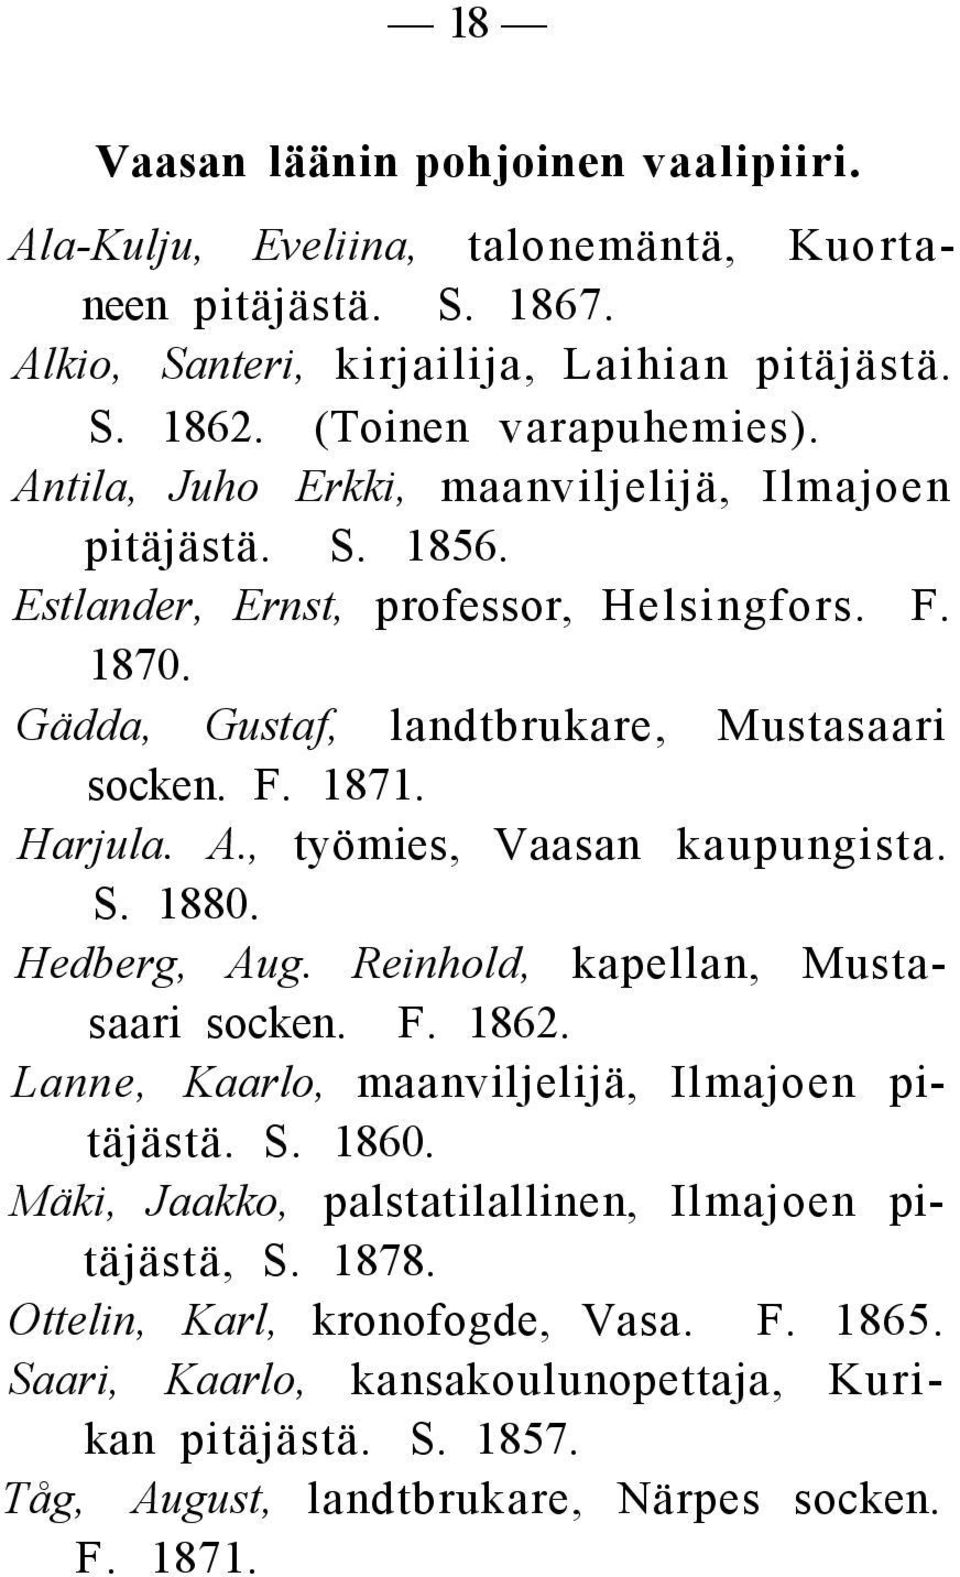 , työmies, Vaasan kaupungista. S. 1880. Hedberg, Aug. Reinhold, kapellan, Mustasaari socken. F. 1862. Lanne, Kaarlo, maanviljelijä, Ilmajoen pitäjästä. S. 1860.